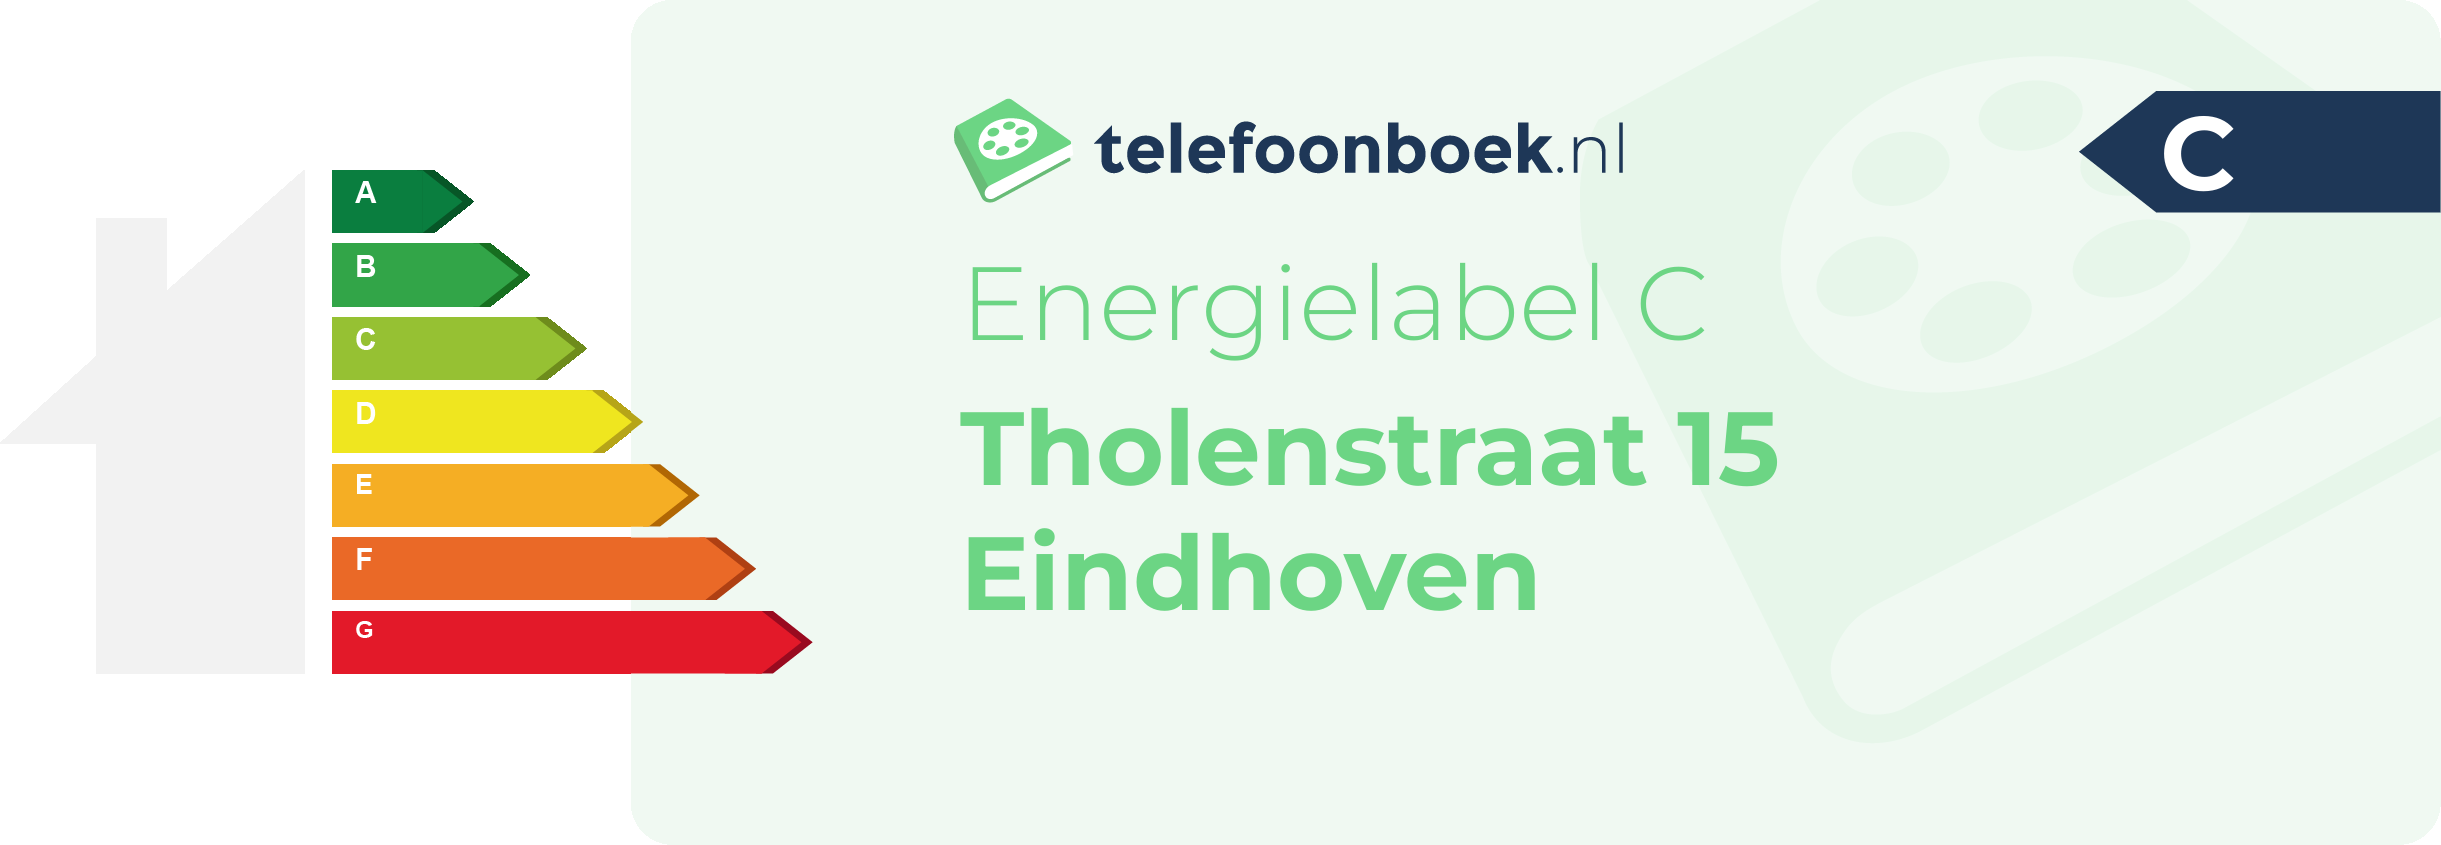 Energielabel Tholenstraat 15 Eindhoven